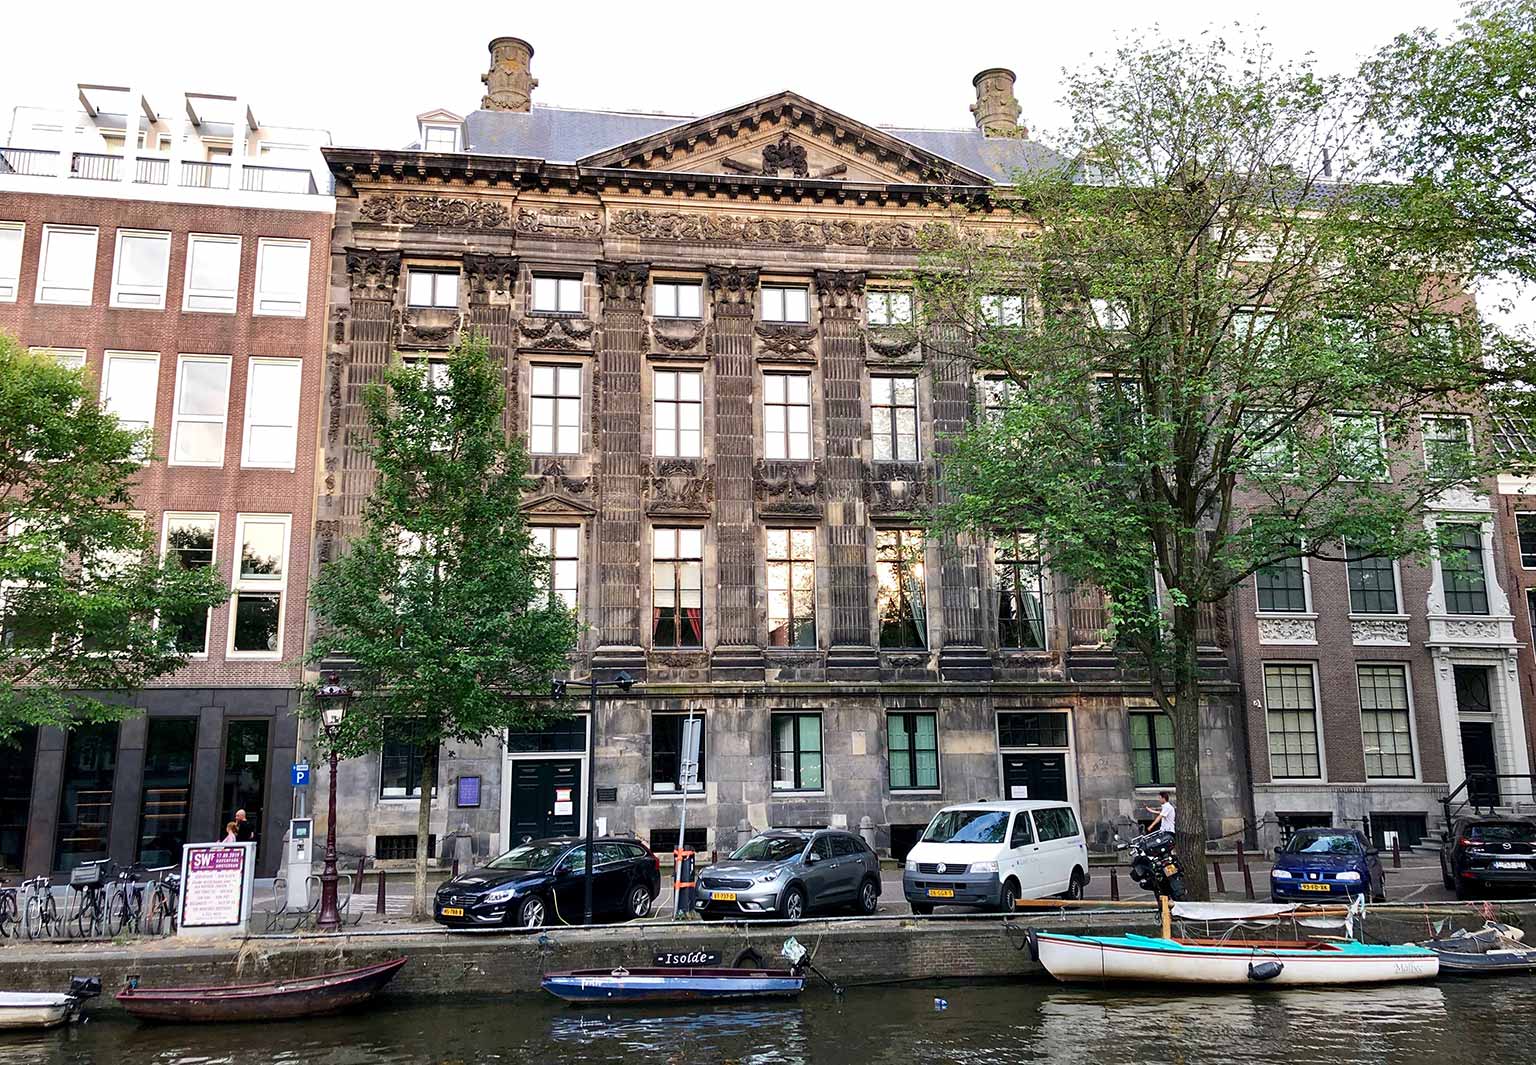 The Trippenhuis, Kloveniersburgwal 27-29, Amsterdam